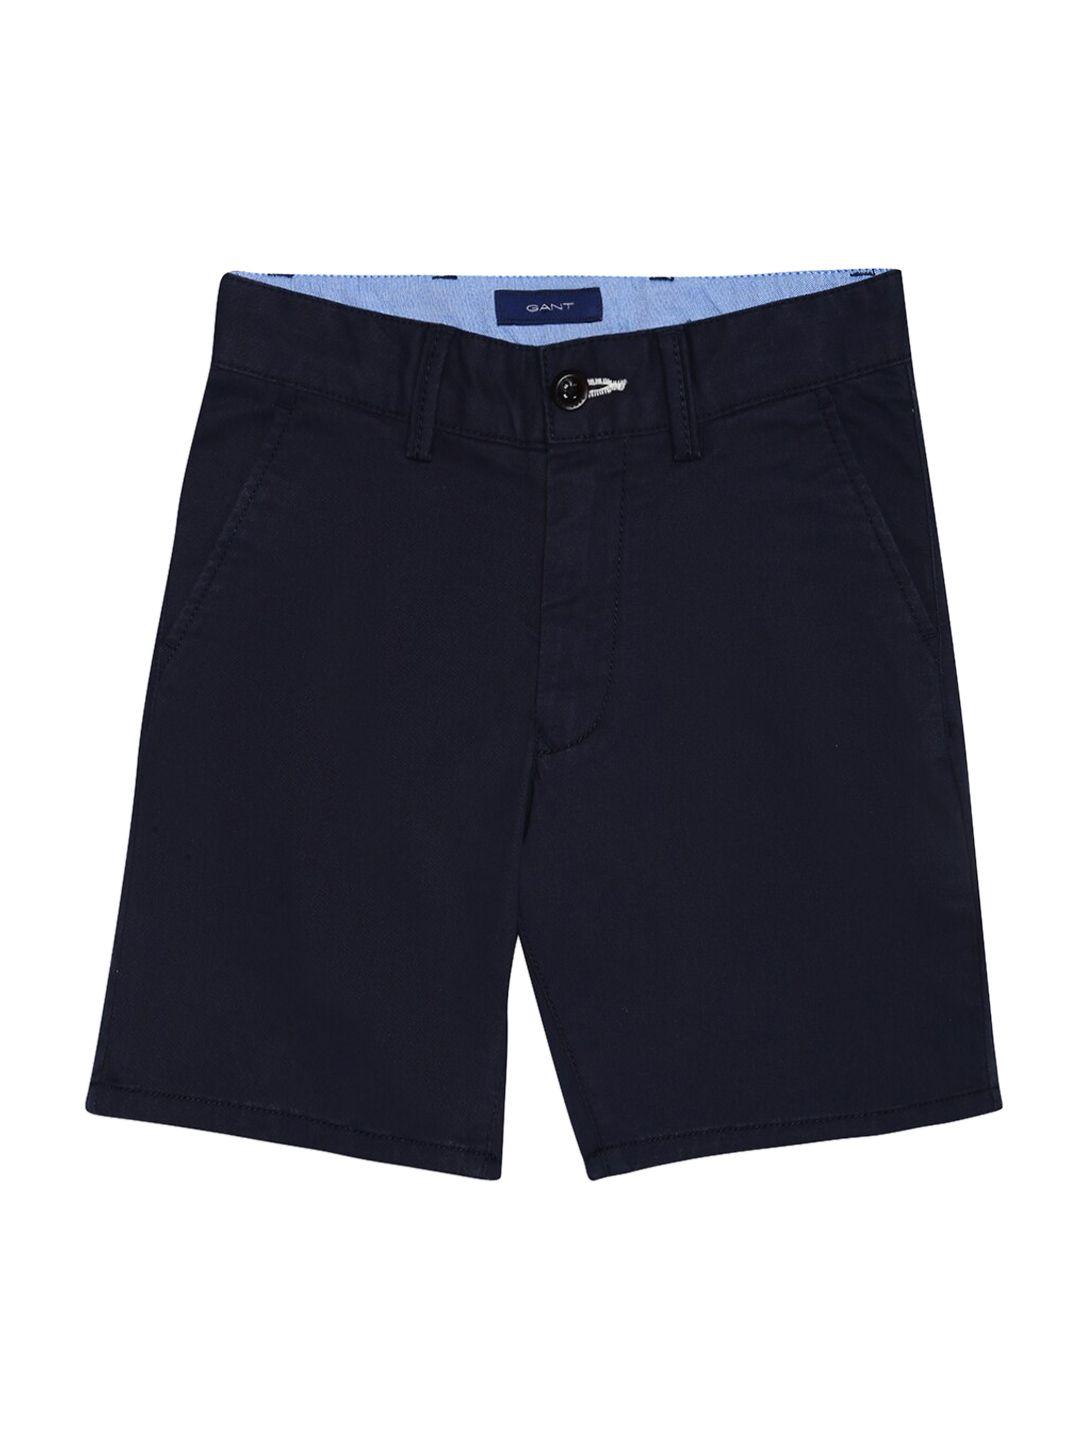 gant boys navy blue solid slim fit regular shorts